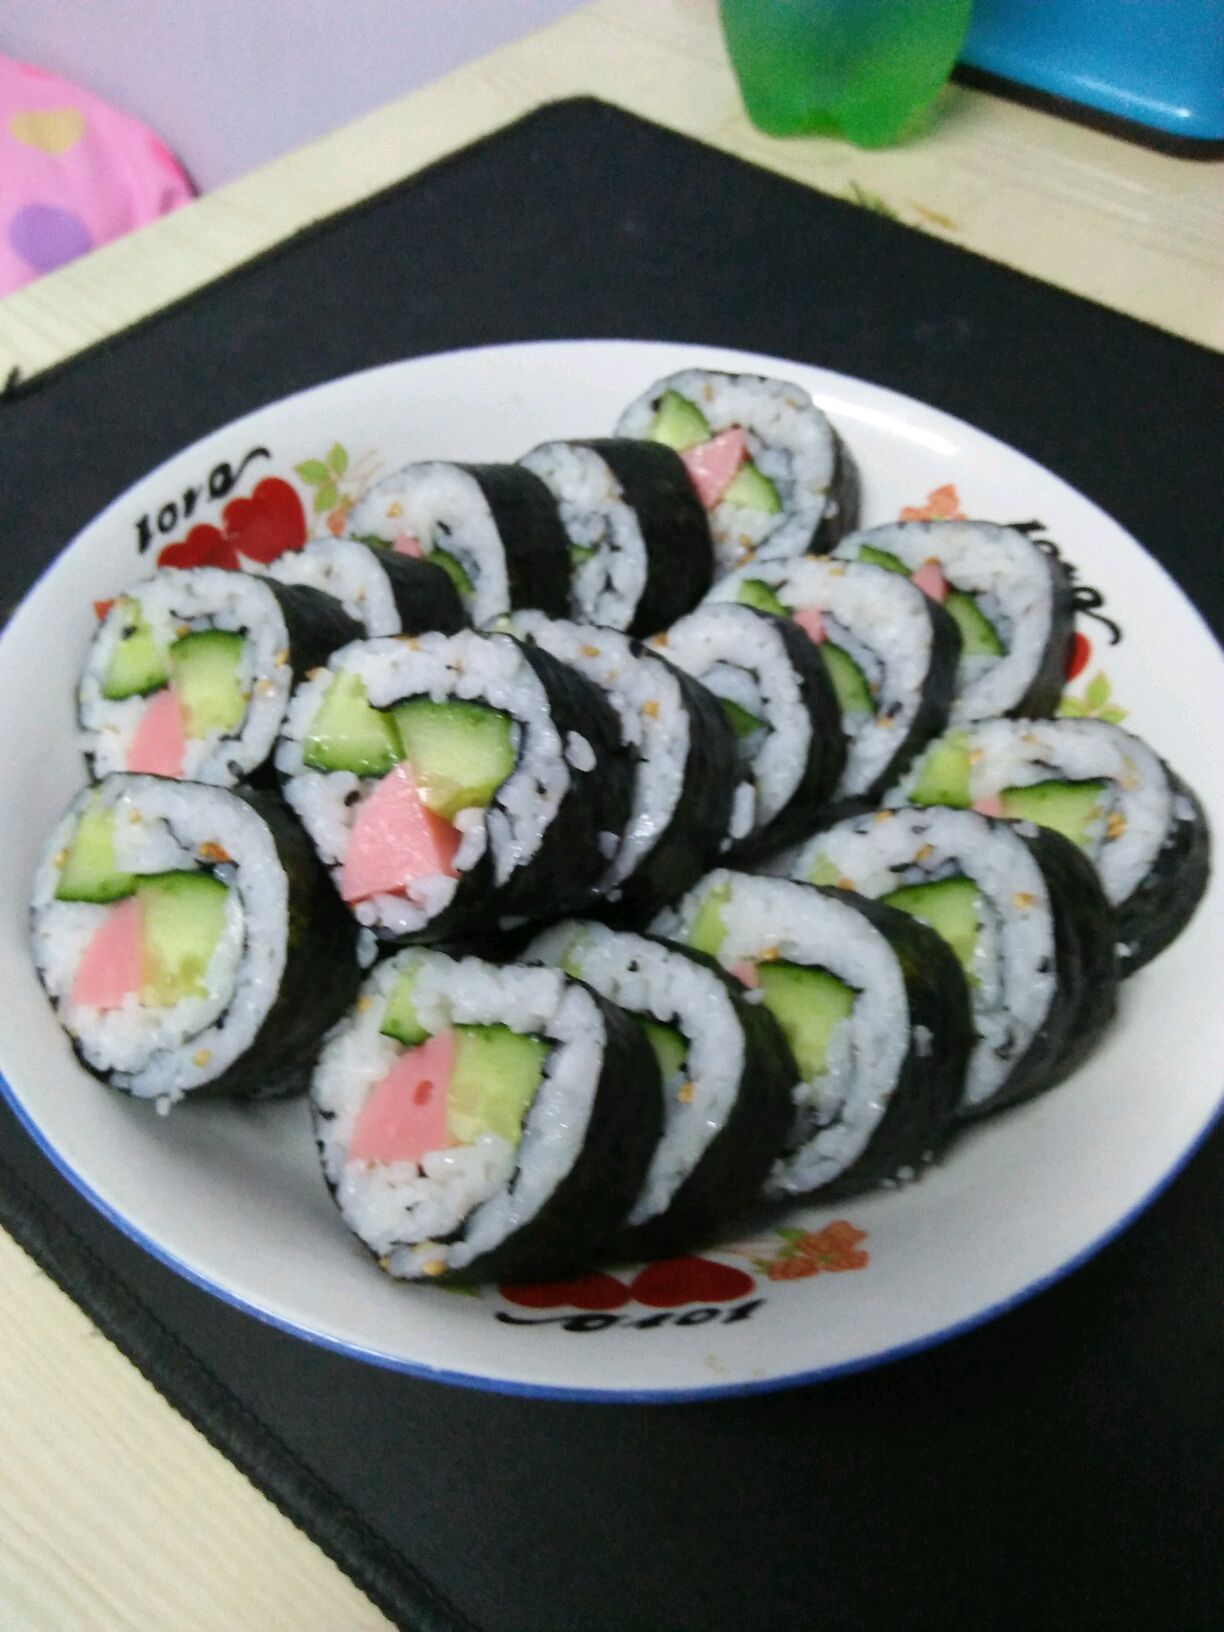 芥末蔬菜寿司,芥末蔬菜寿司的家常做法 - 美食杰芥末蔬菜寿司做法大全